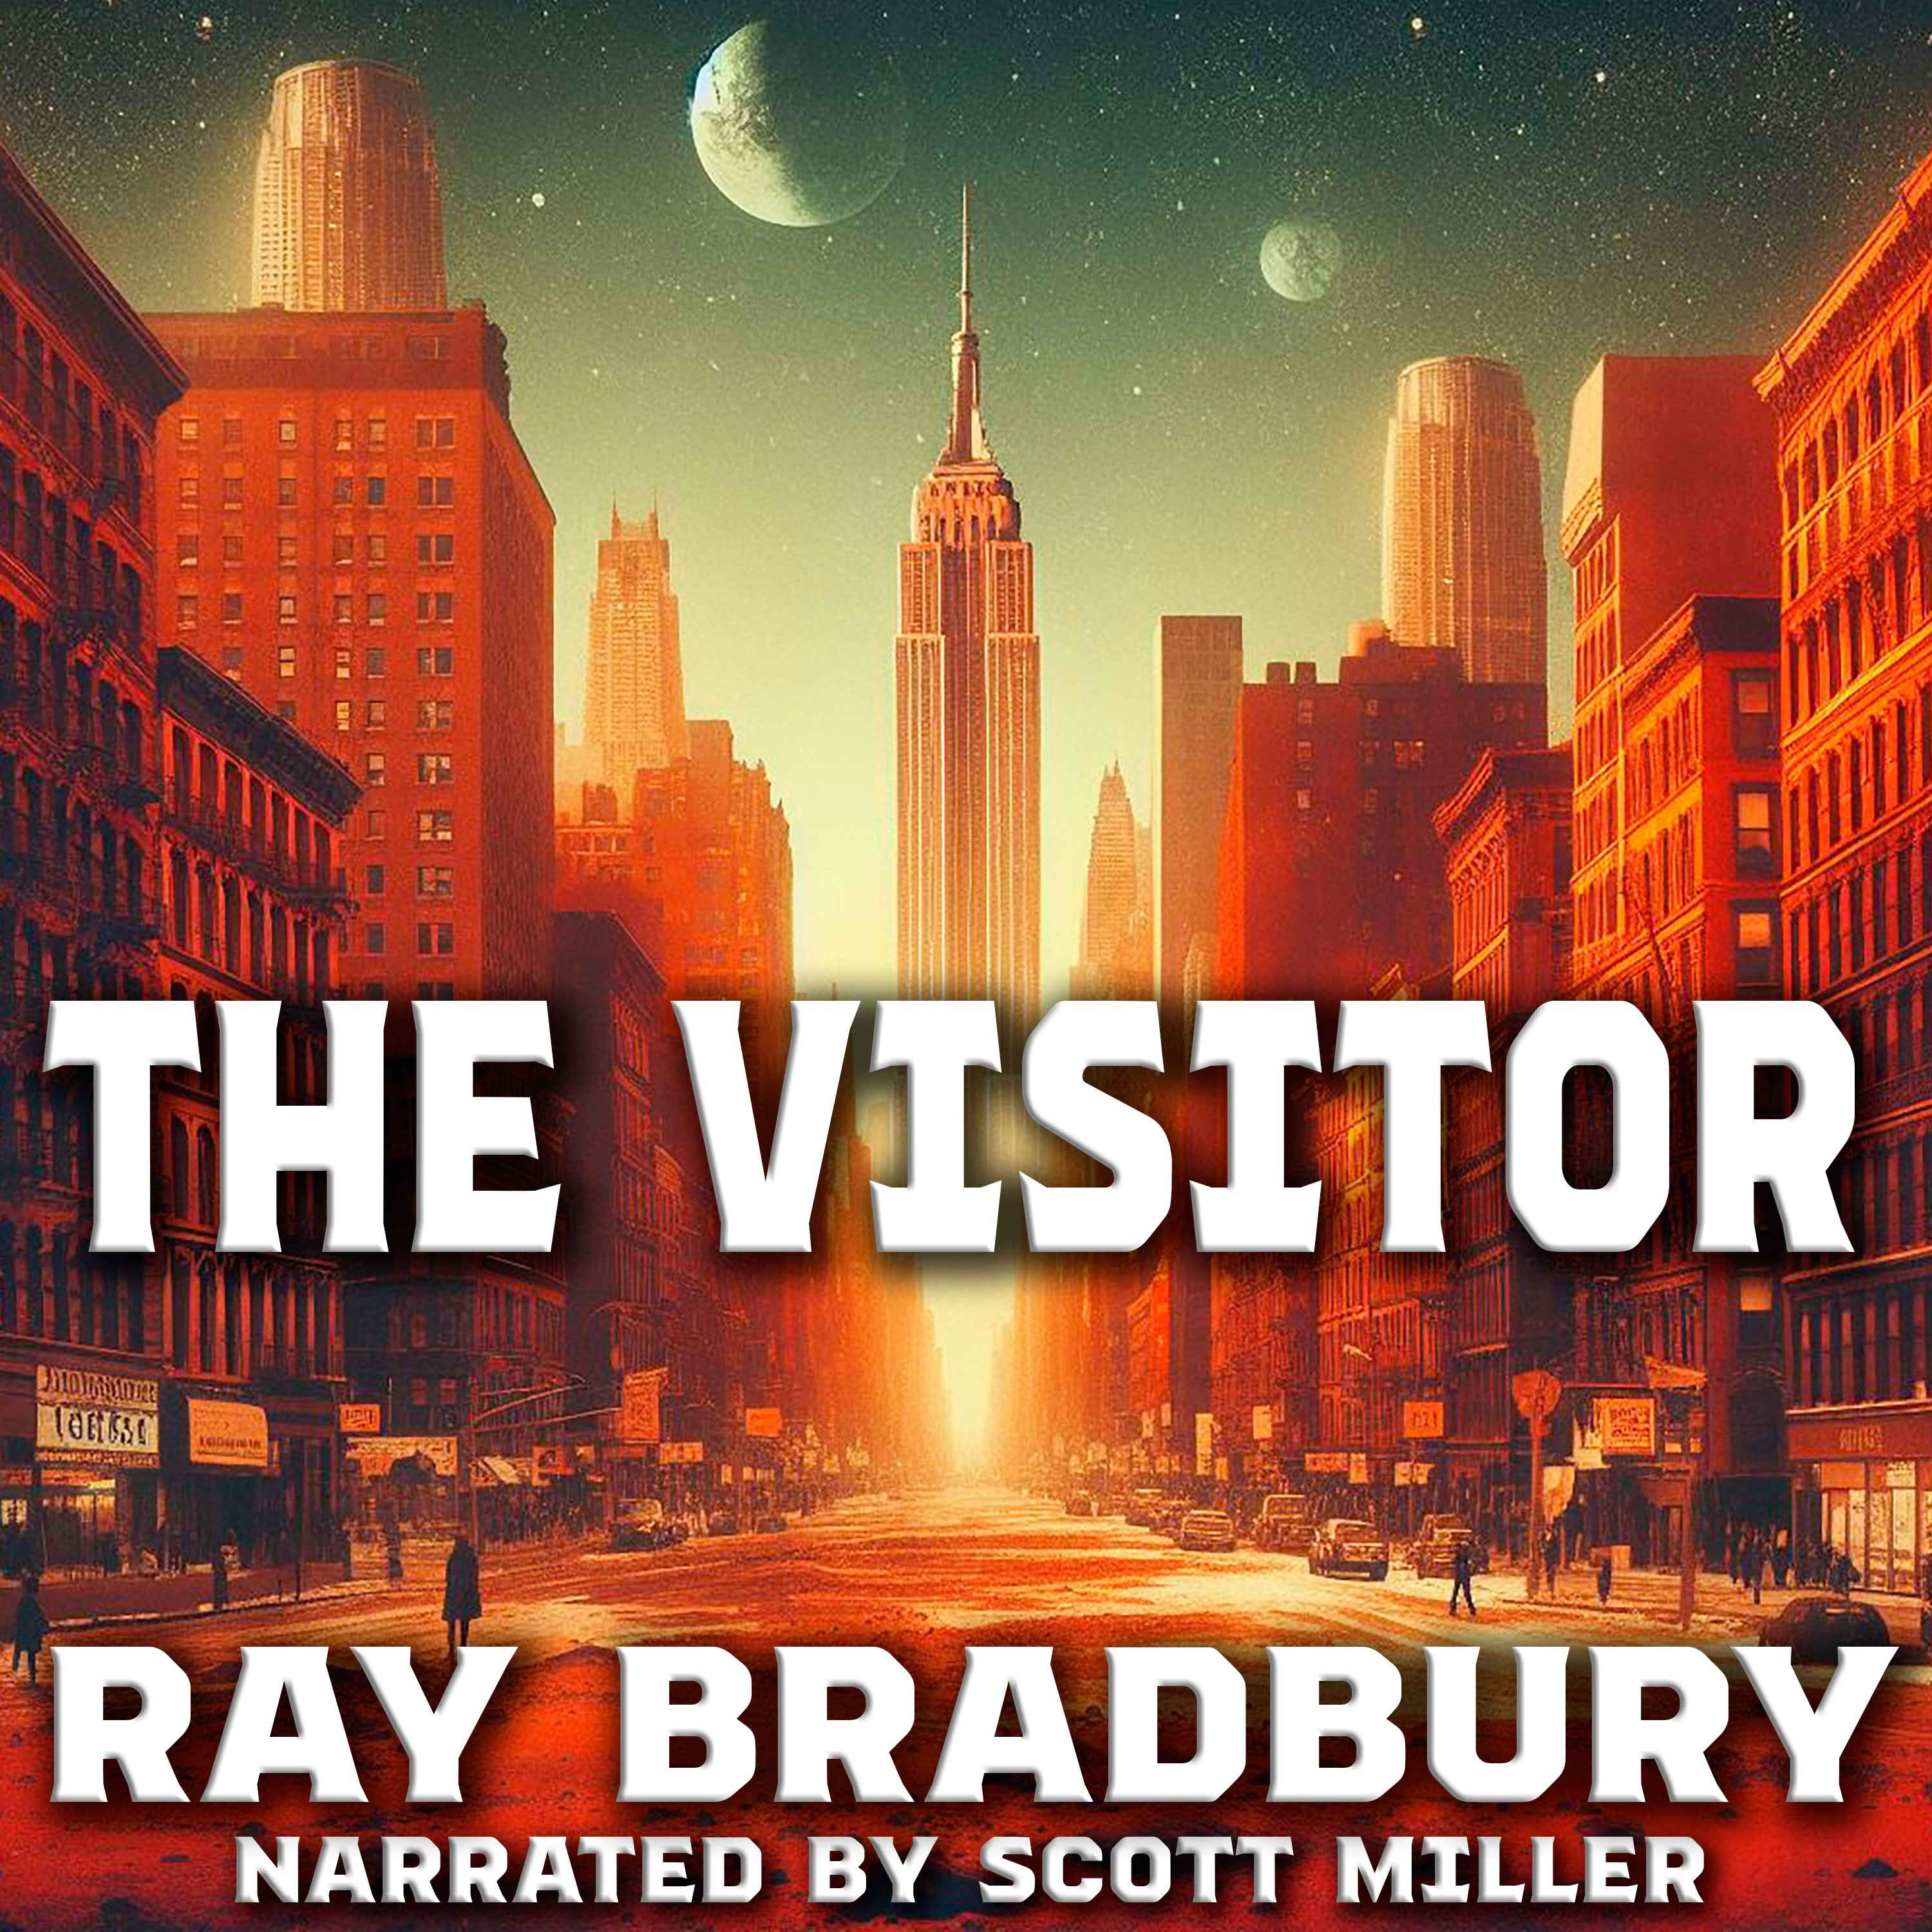 The Visitor by Ray Bradbury - Ray Bradbury Short Science Fiction Stories